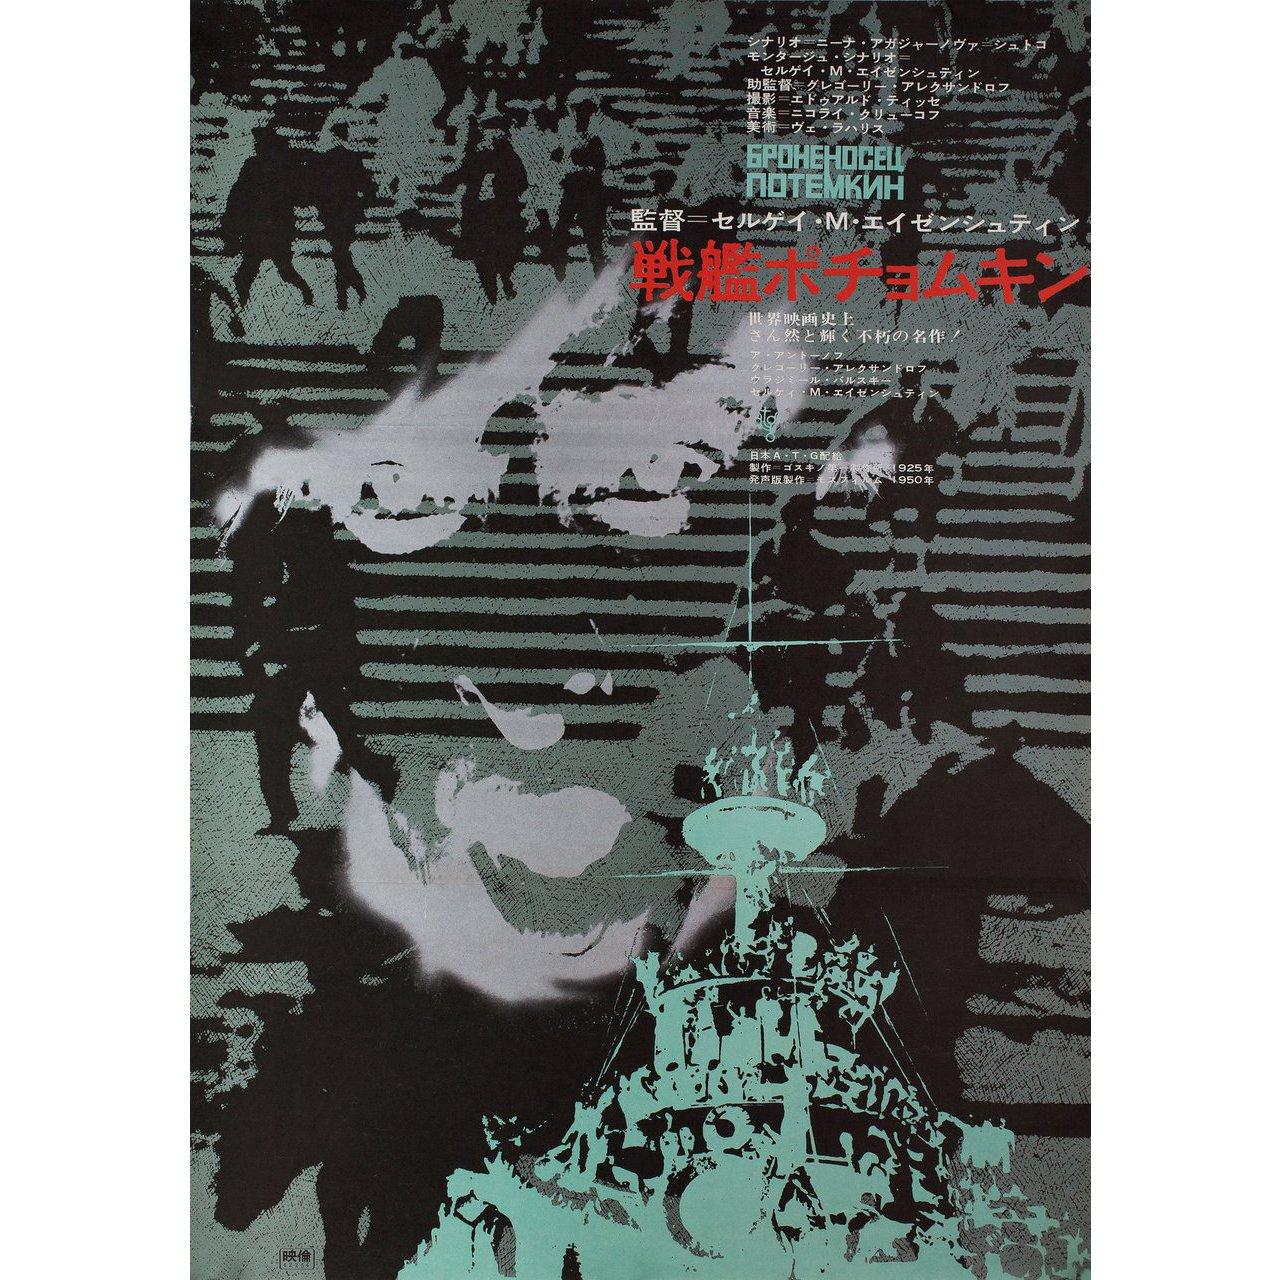 Originales japanisches B2-Plakat von 1967 für den ersten japanischen Kinostart des Films Panzerkreuzer Potemkin (Bronenosets Potyomkin) von 1925 unter der Regie von Sergei M. Eisenstein mit Aleksandr Antonov / Vladimir Barsky / Grigori Aleksandrov /